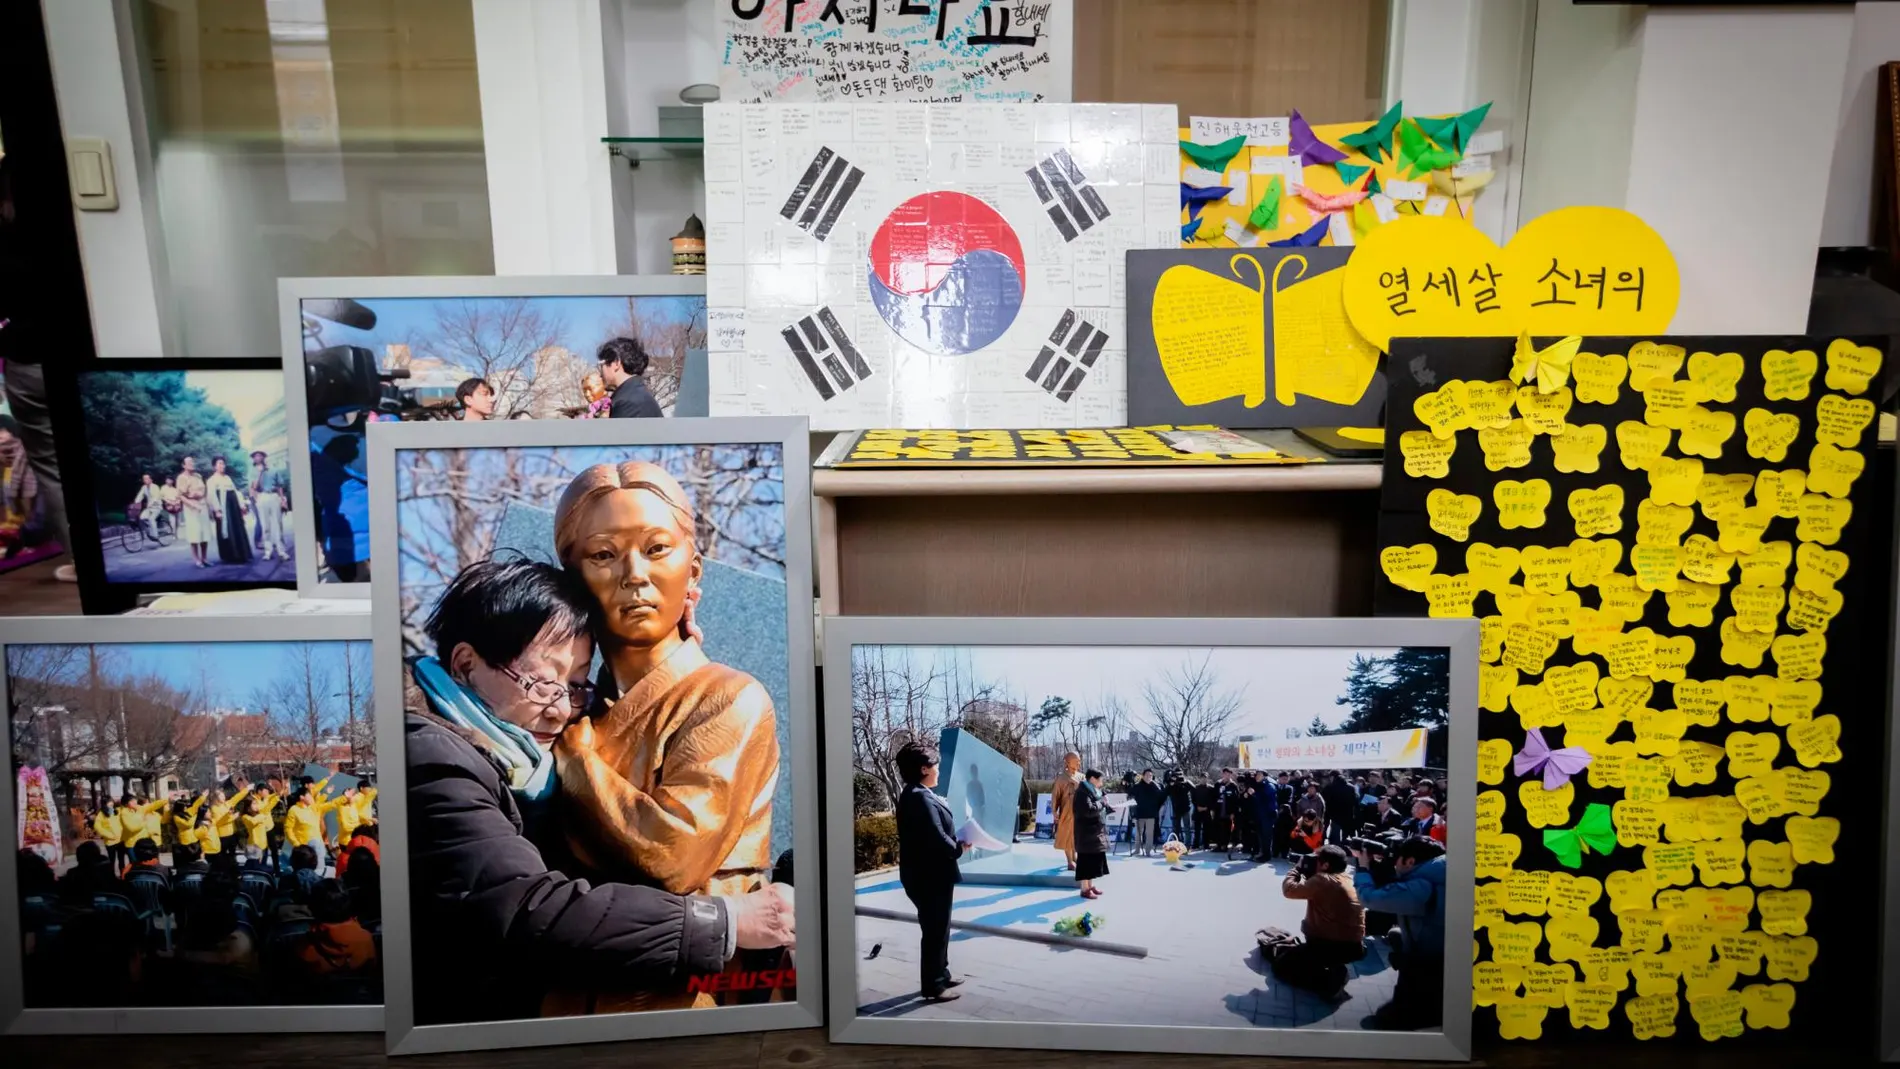 Kim abraza a una de las estatuas de niñas que hay frente a las embajadas japonesas/Fotos: Yun/Kocis